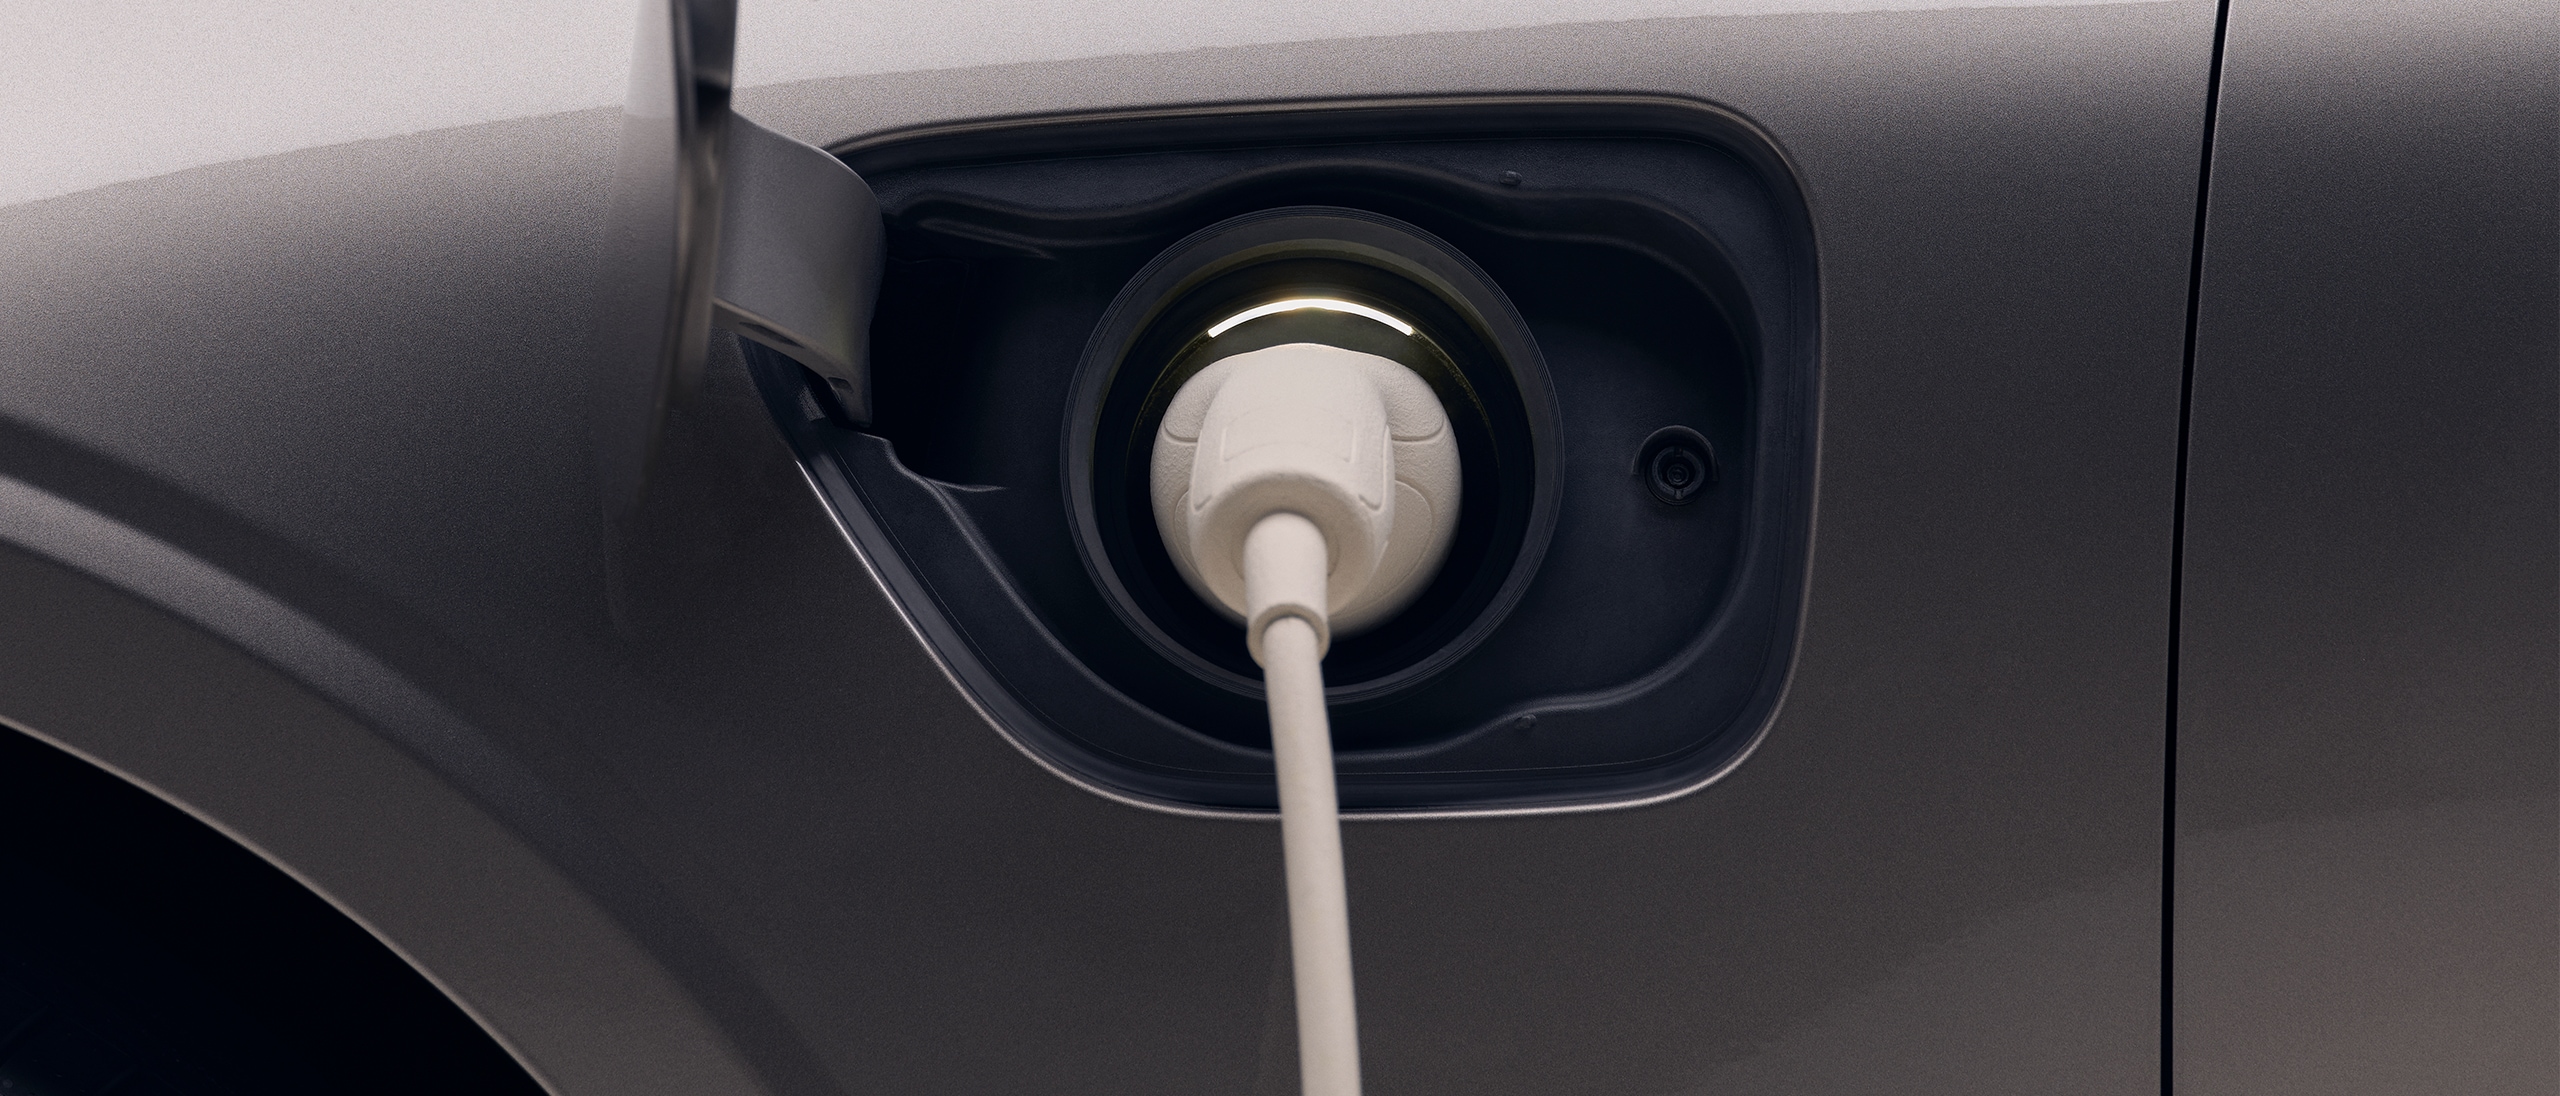 Détail de l'avant gauche d'une nouvelle Volvo électrique gris foncé avec un câble de recharge blanc branché sur le véhicule.